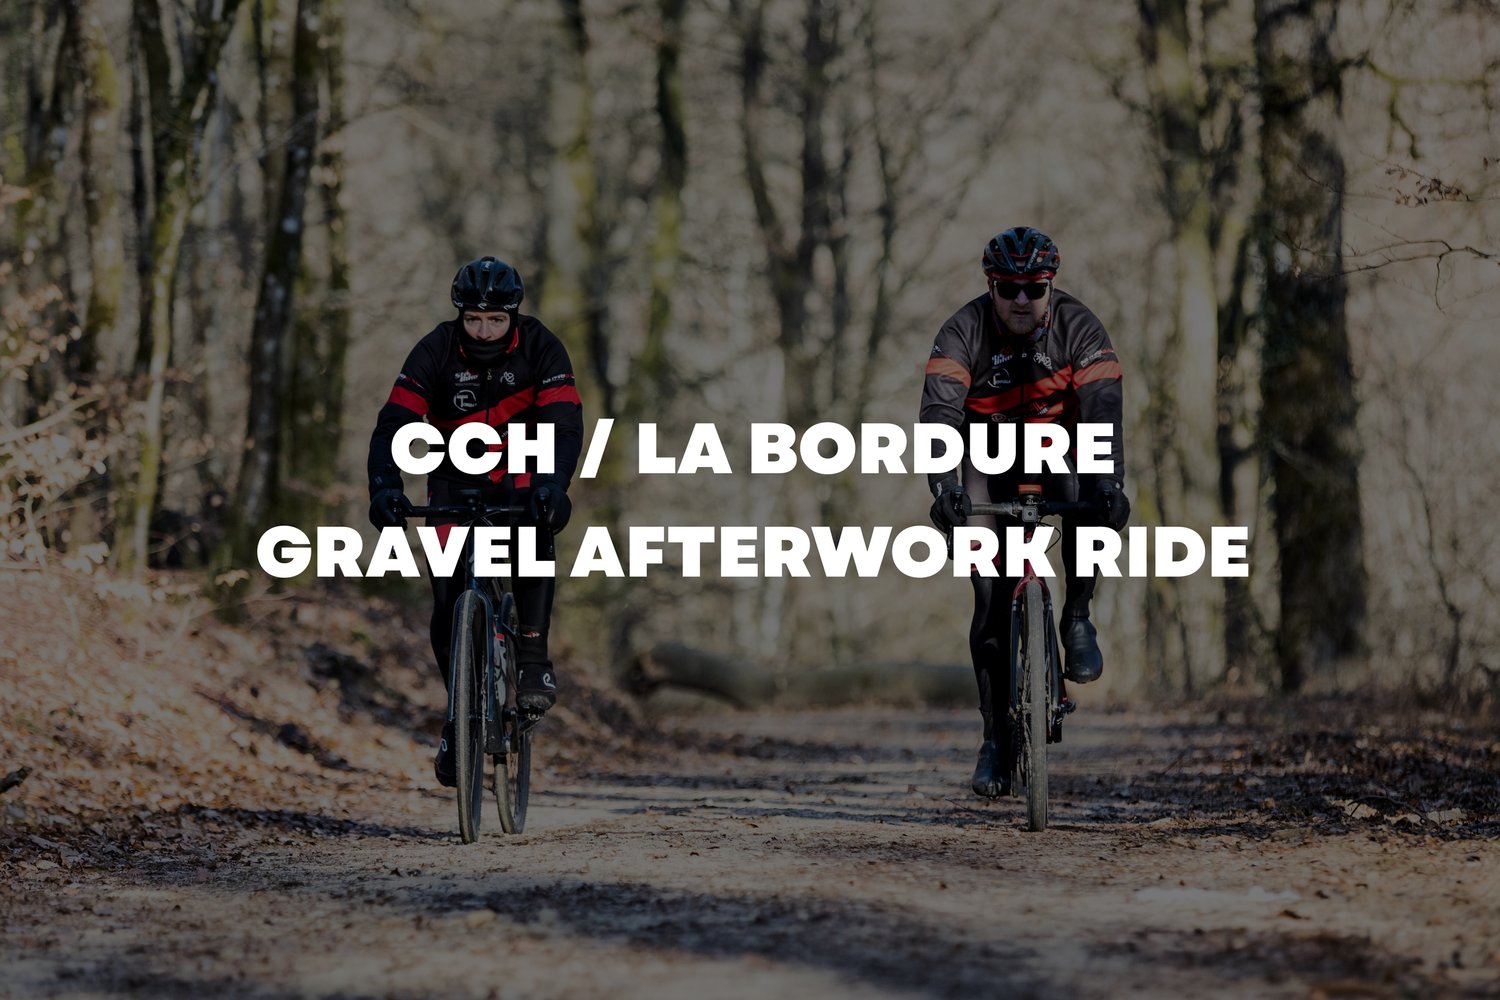 Cch / La Bordure - Gravel Afterwork ride